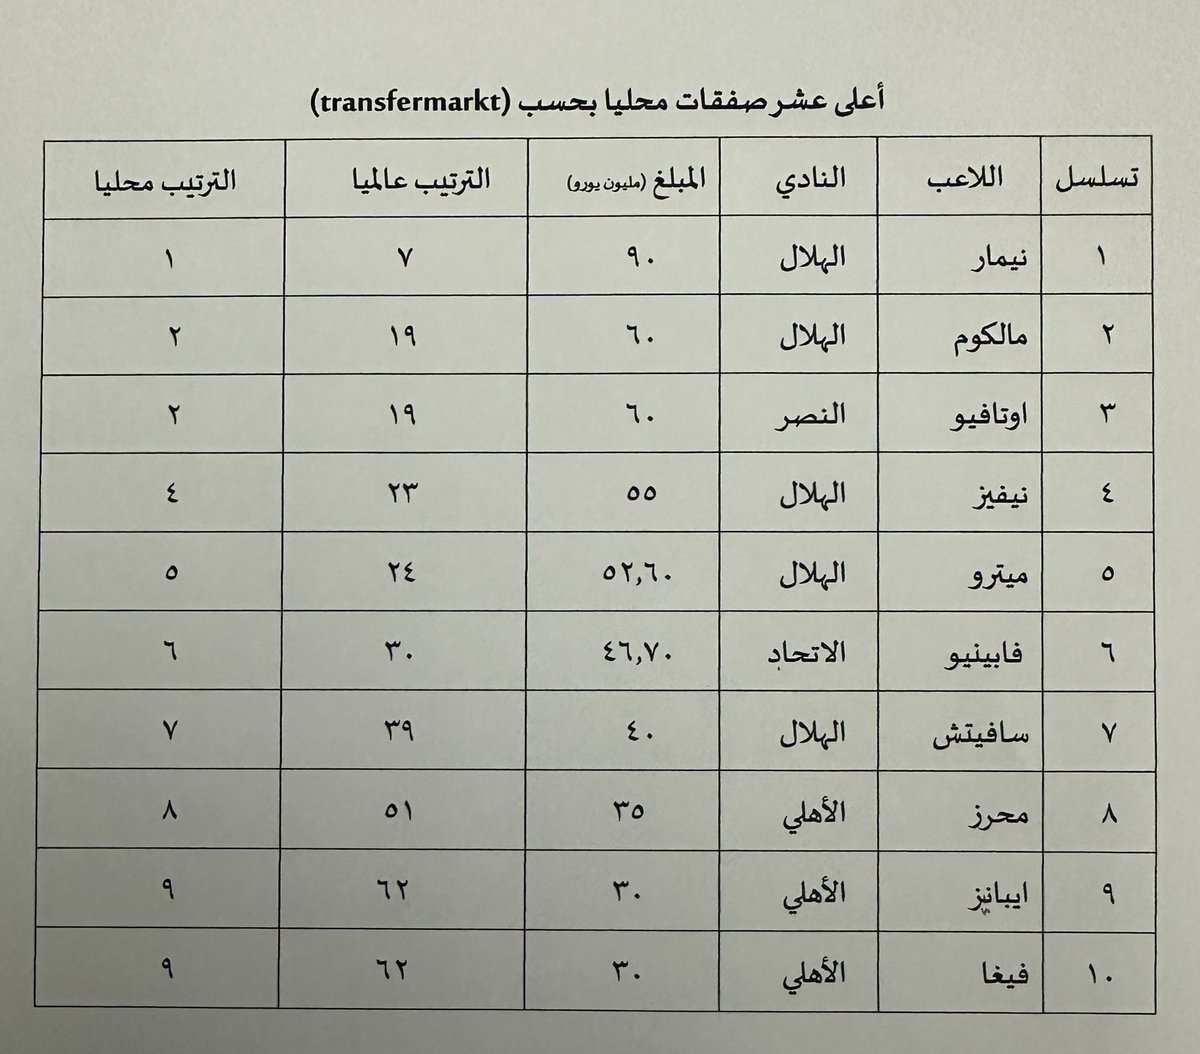 أعلى عشر صفقات محلية..
المصدر: مكتب خدمات الطالب.
#الهلال #الاتحاد #النصر #الاهلي